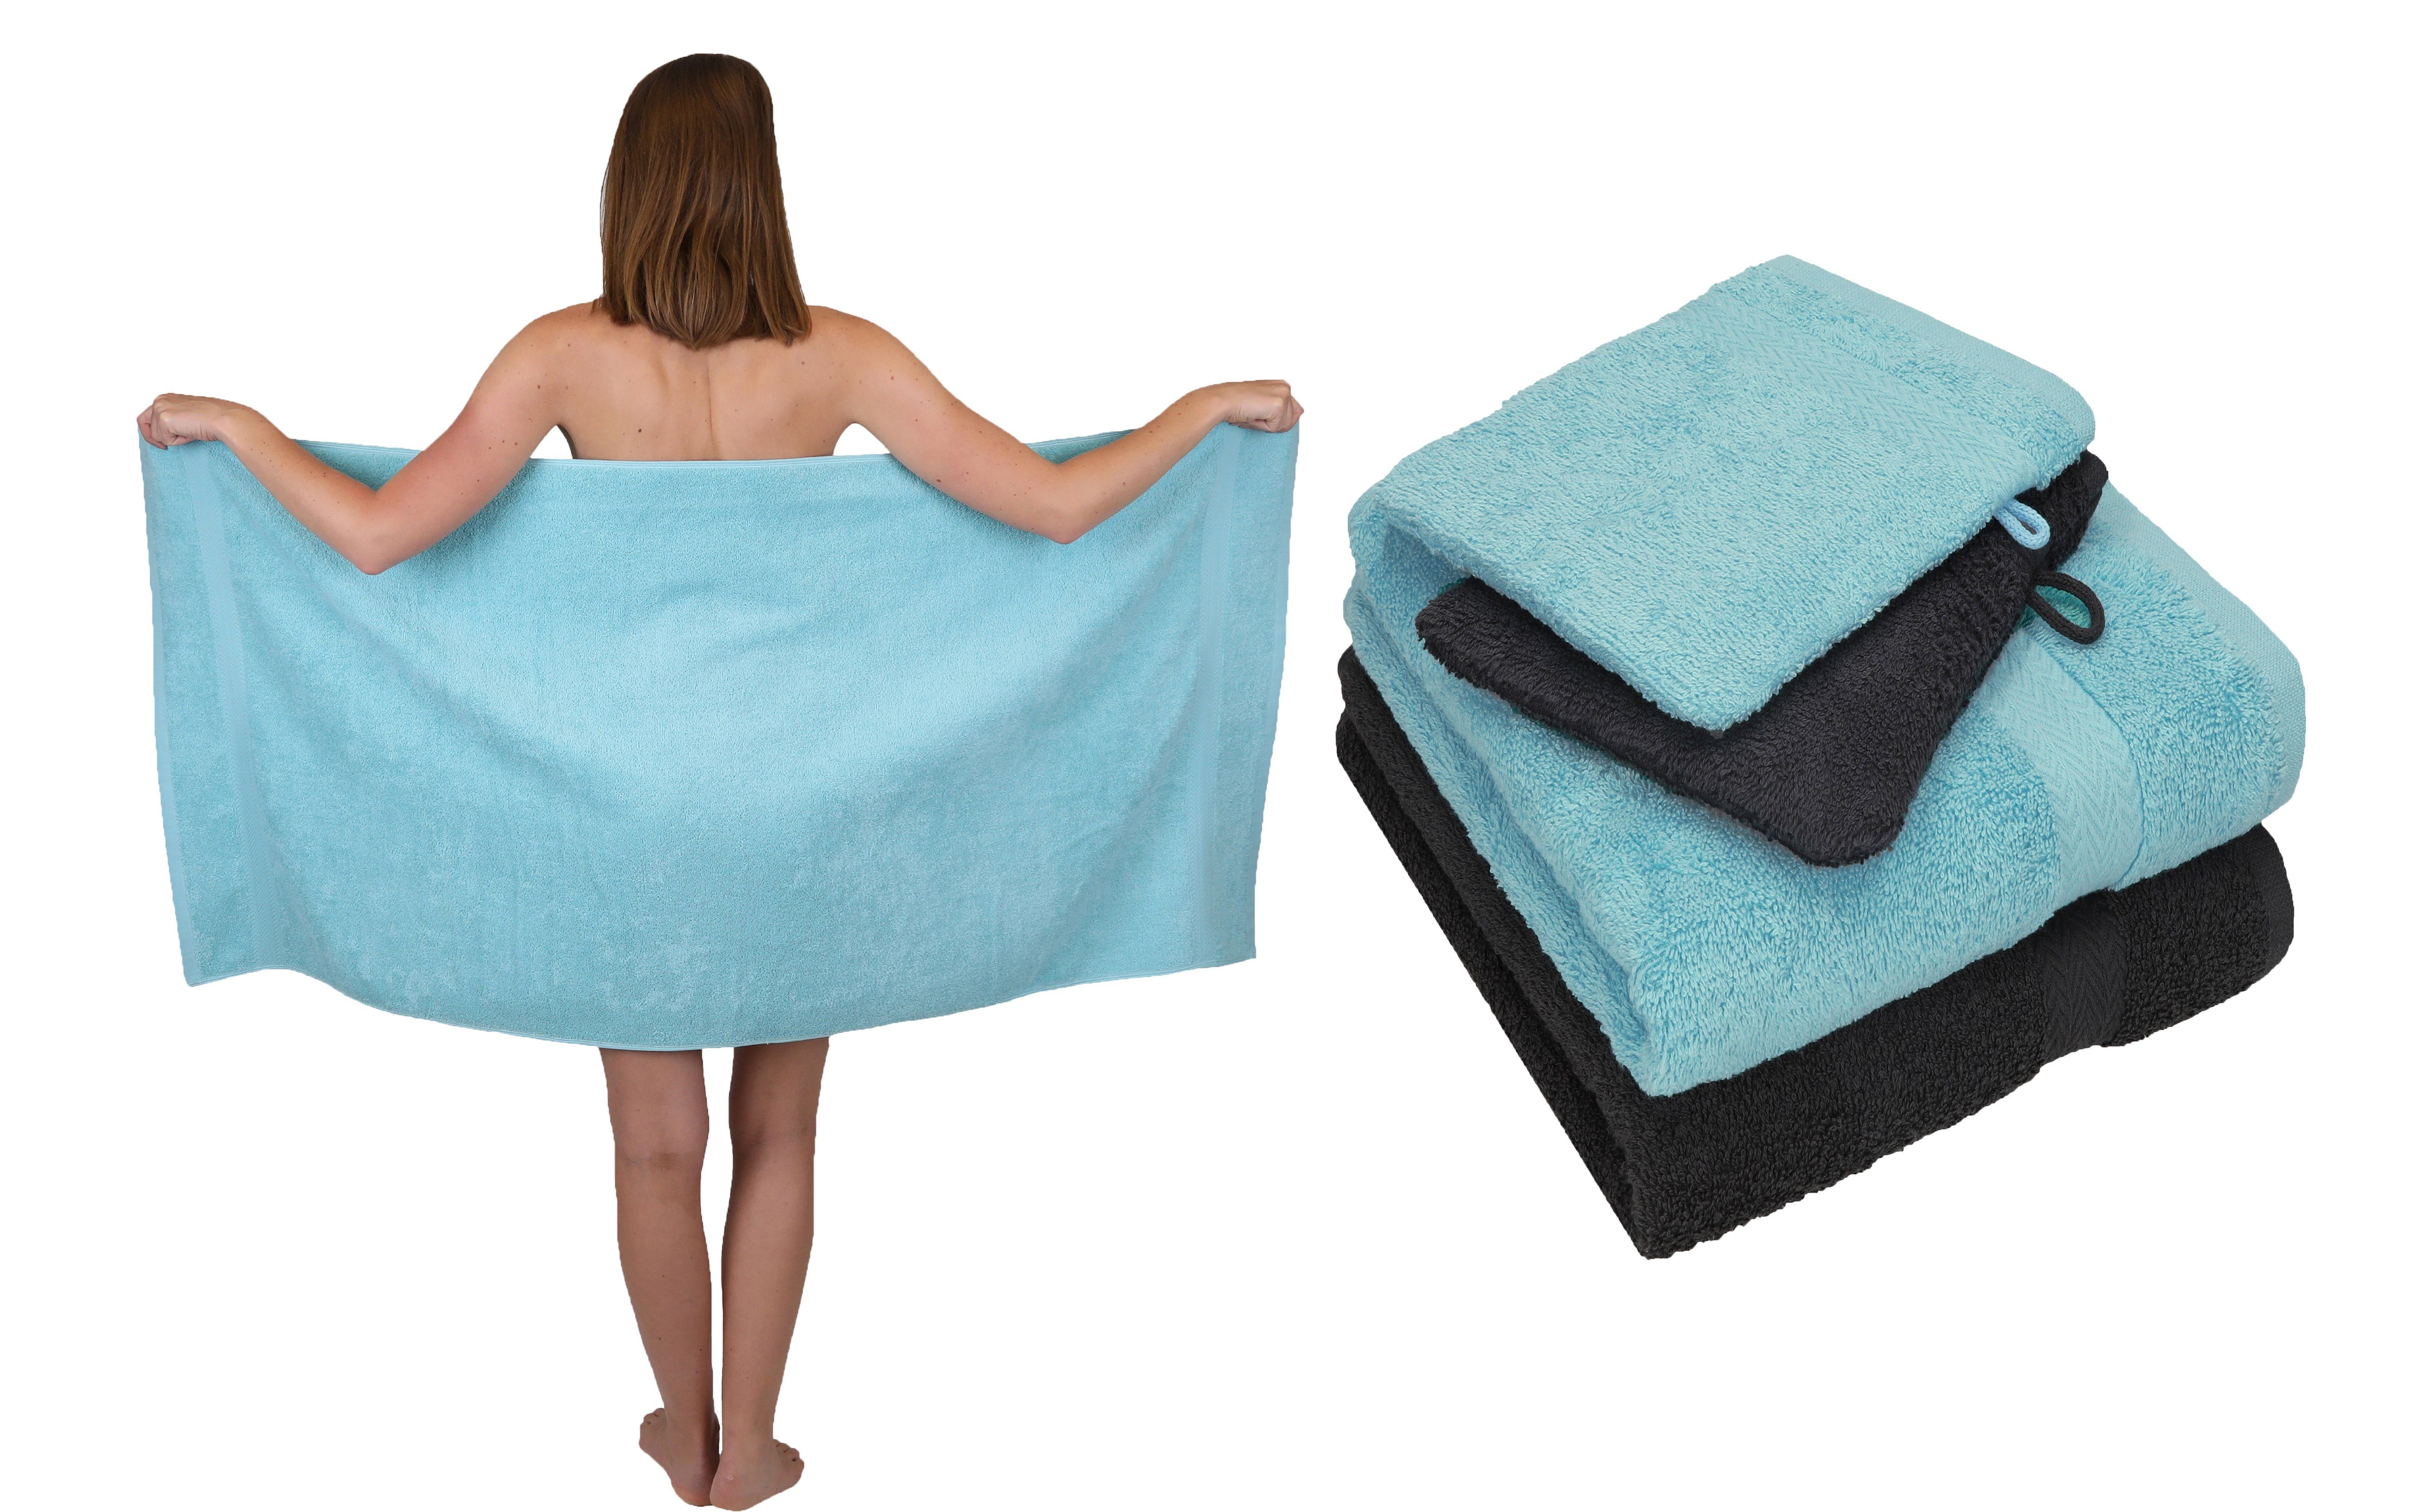 Betz Handtuch Set 5 TLG. Handtuch Set Single Pack 100% Baumwolle 1 Duschtuch 2 Handtücher 2 Waschhandschuhe, 100% Baumwolle ocean-graphit grau